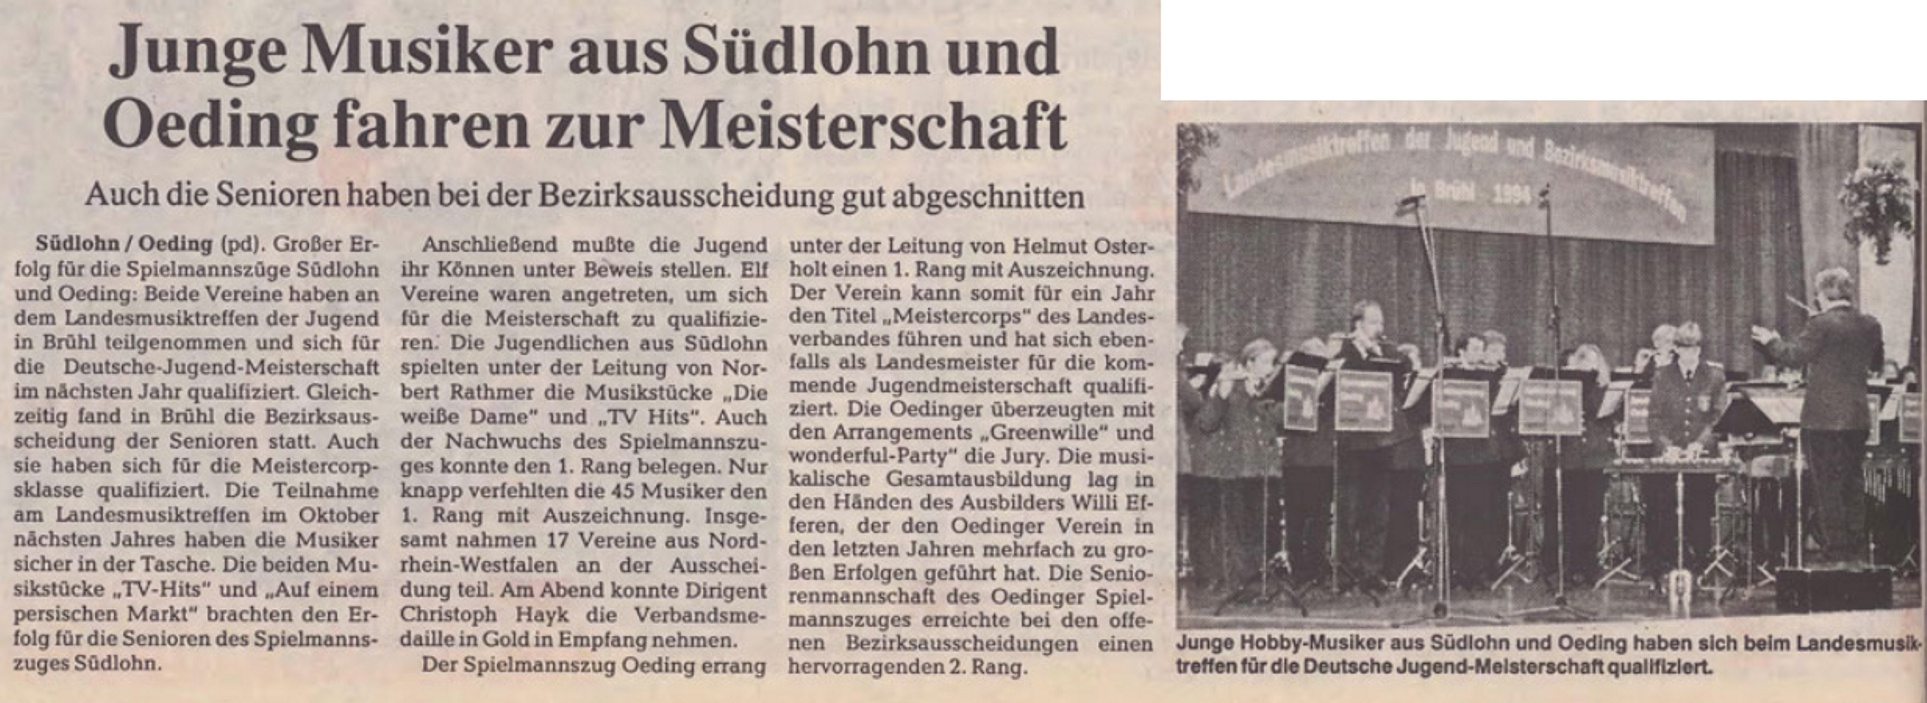 Borkener Zeitung 27.10.1994 | Junge Musiker aus Südlohn und Oeding fahren zur Meisterschaft